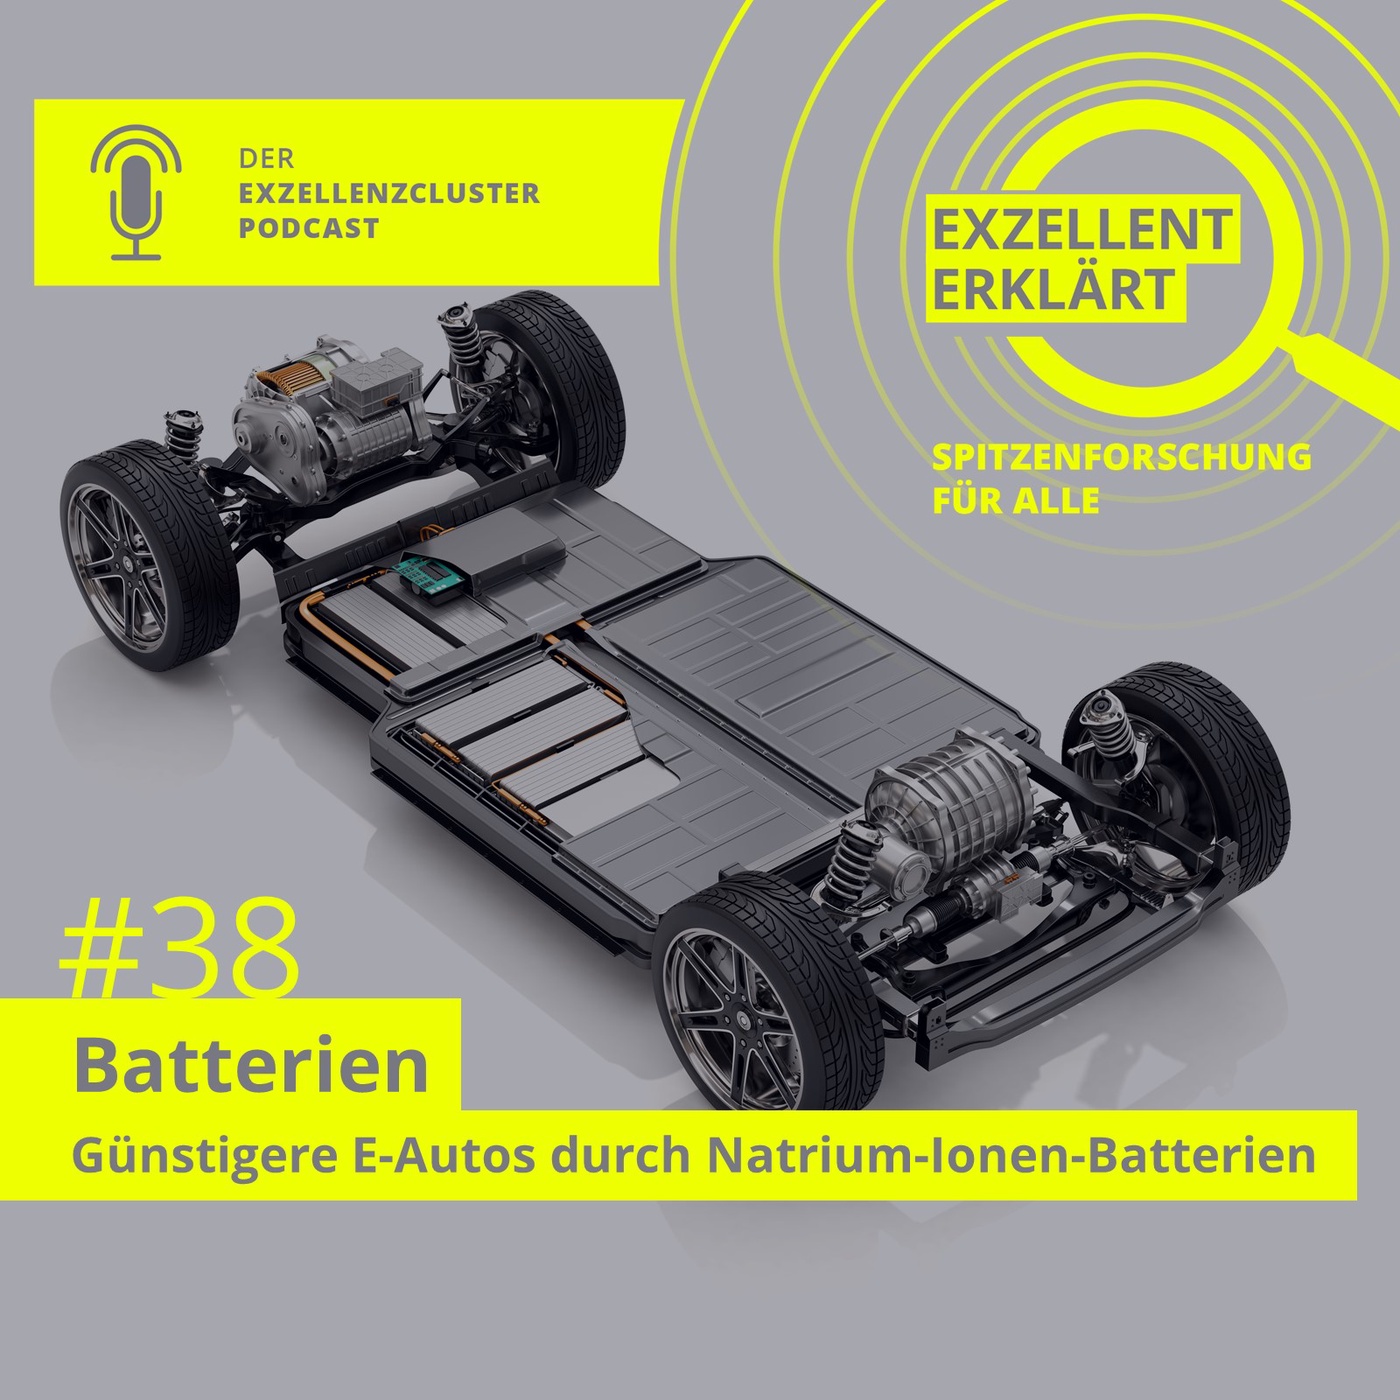 Günstigere E-Autos durch Natrium-Ionen-Batterien